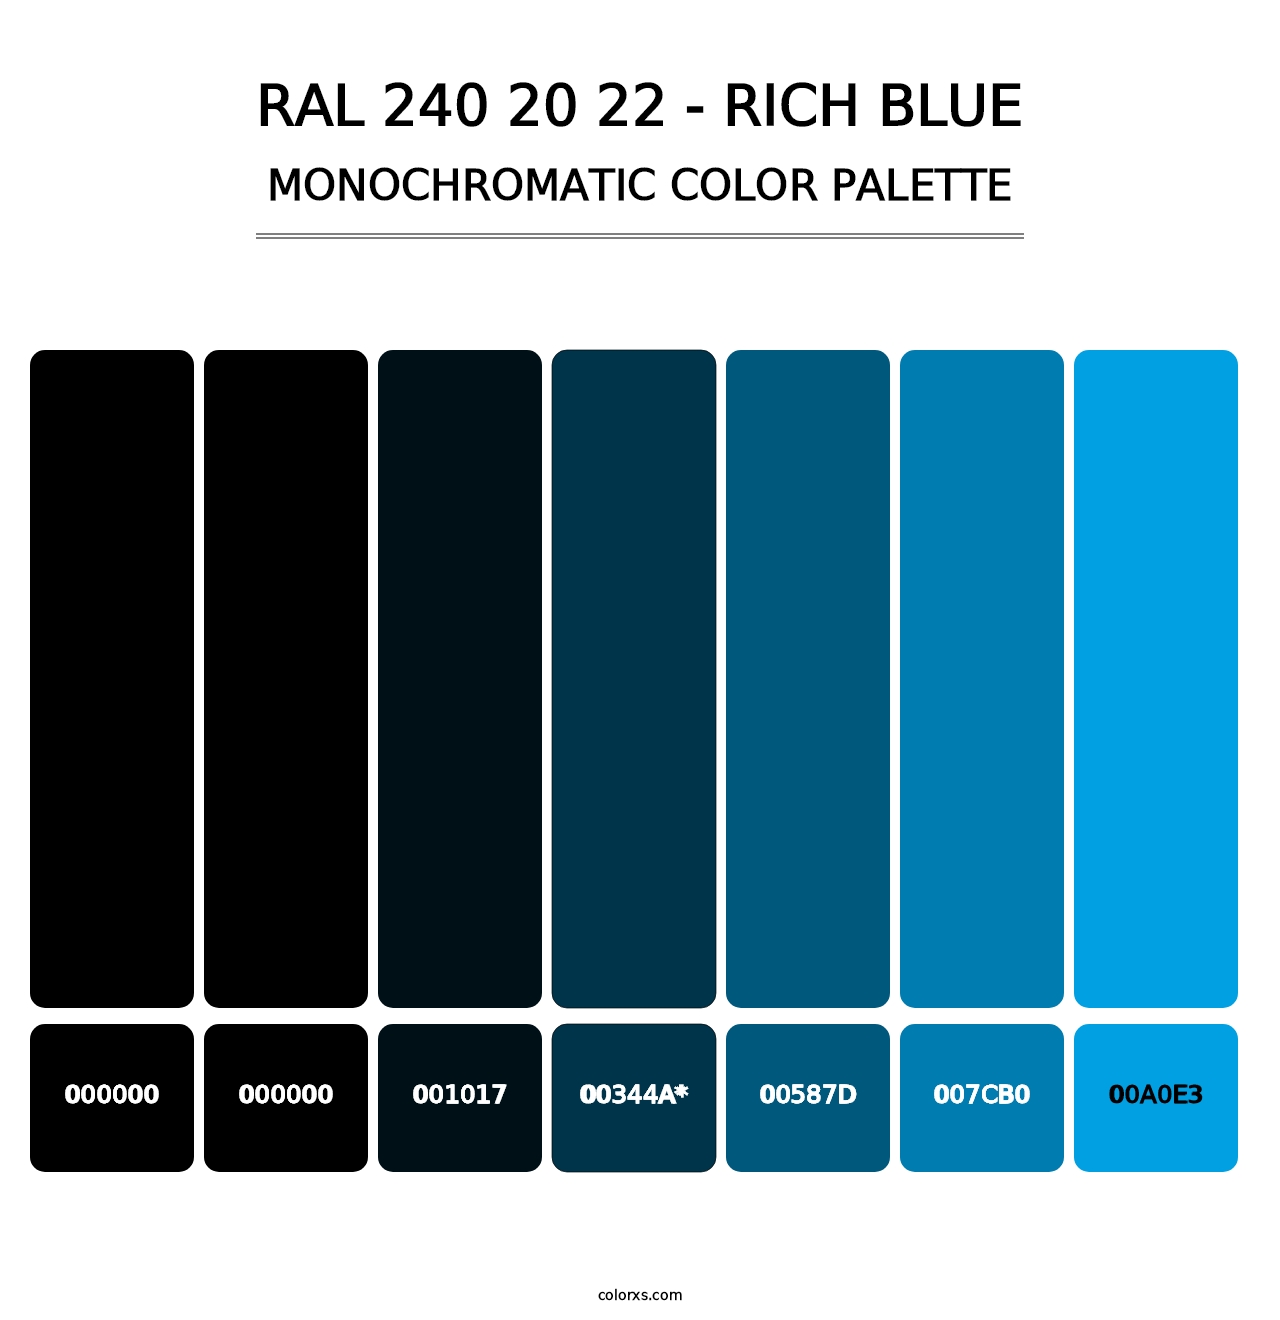 RAL 240 20 22 - Rich Blue - Monochromatic Color Palette